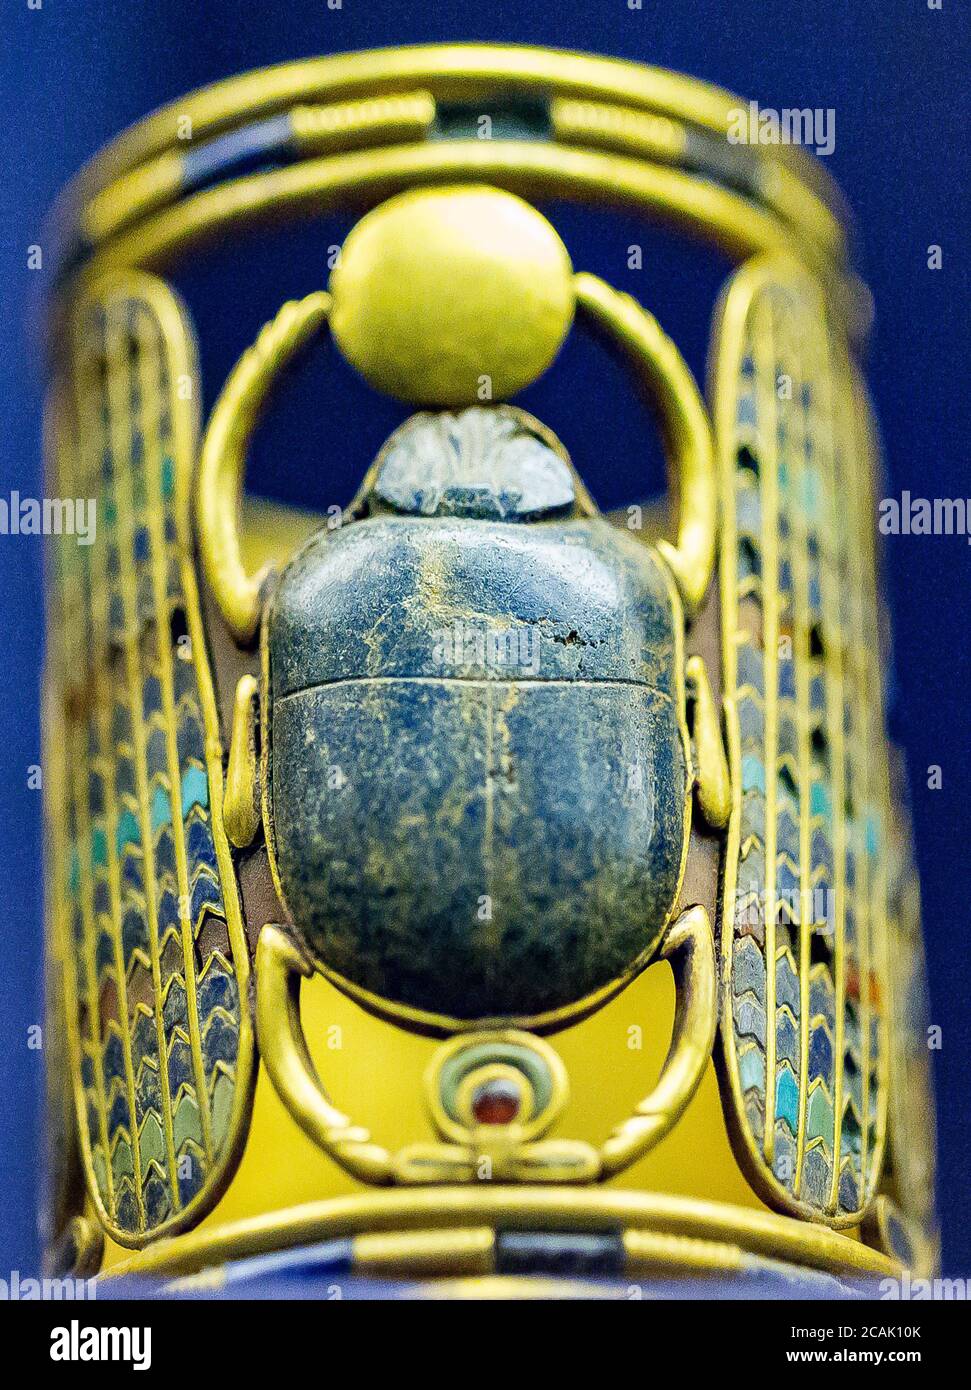 Kairo, Ägyptisches Museum, königliche Nekropole von Tanis, Begräbnis des Königs Psusennes I : eines der beiden Armbänder zeigt Kartuschen des Königs. Stockfoto